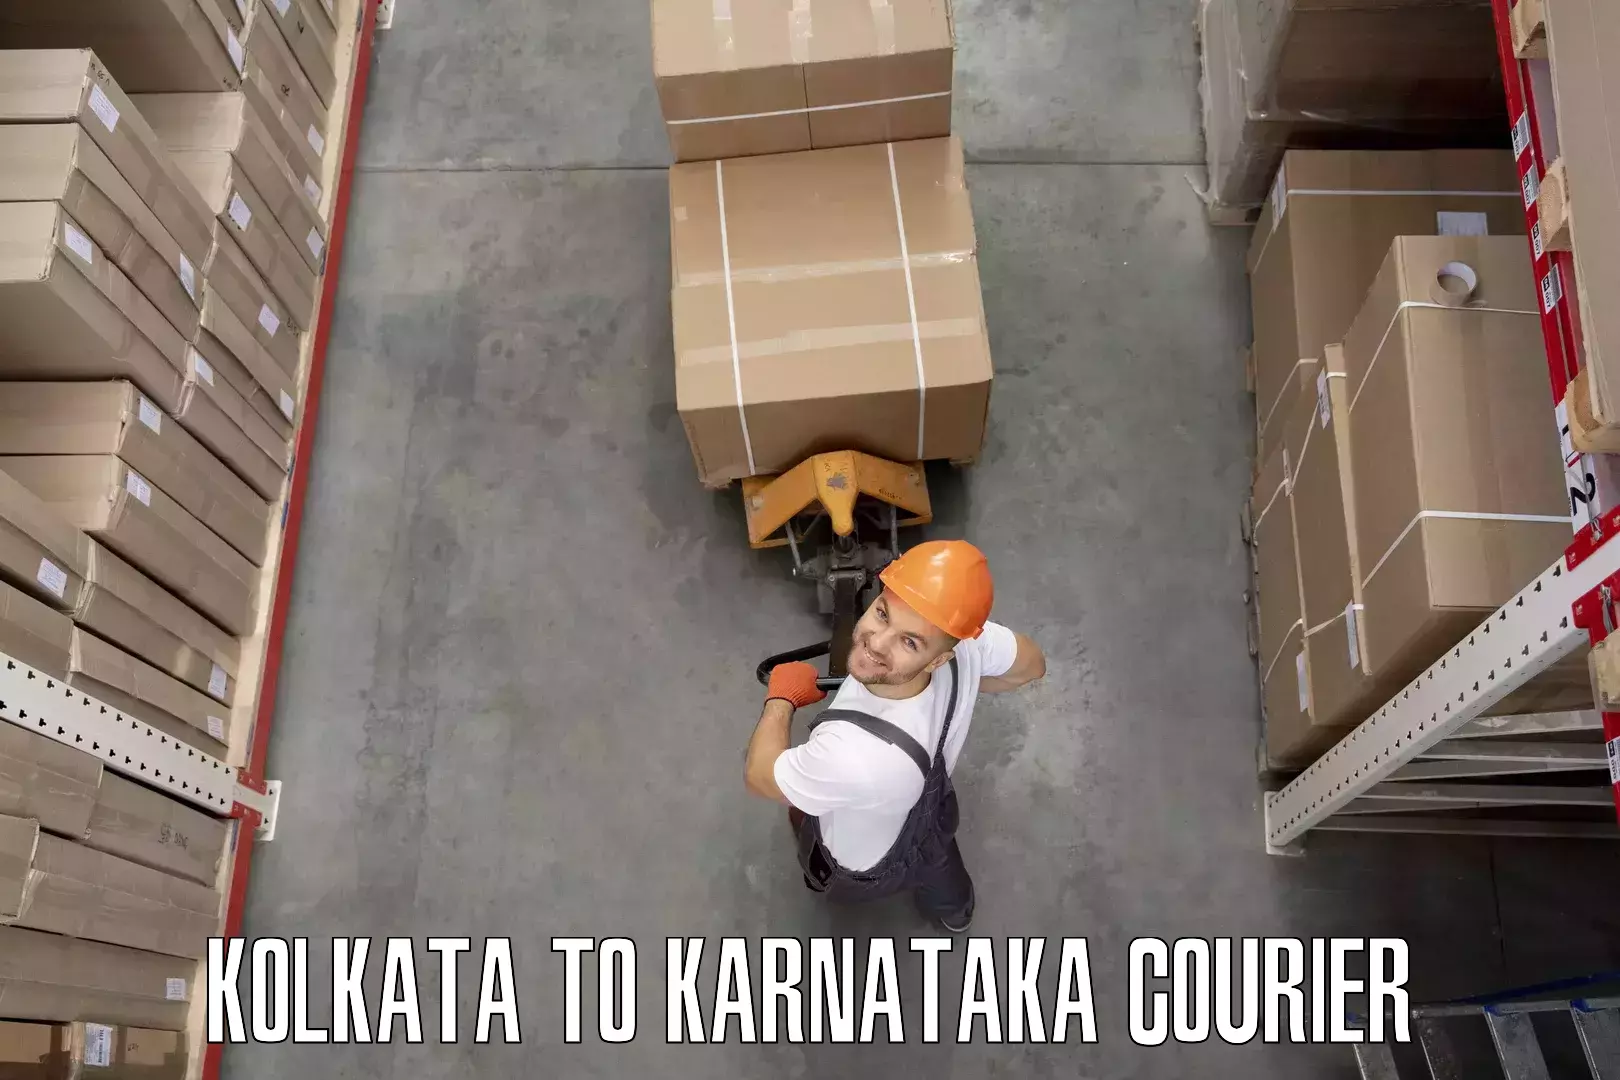 Furniture transport specialists Kolkata to Bellary